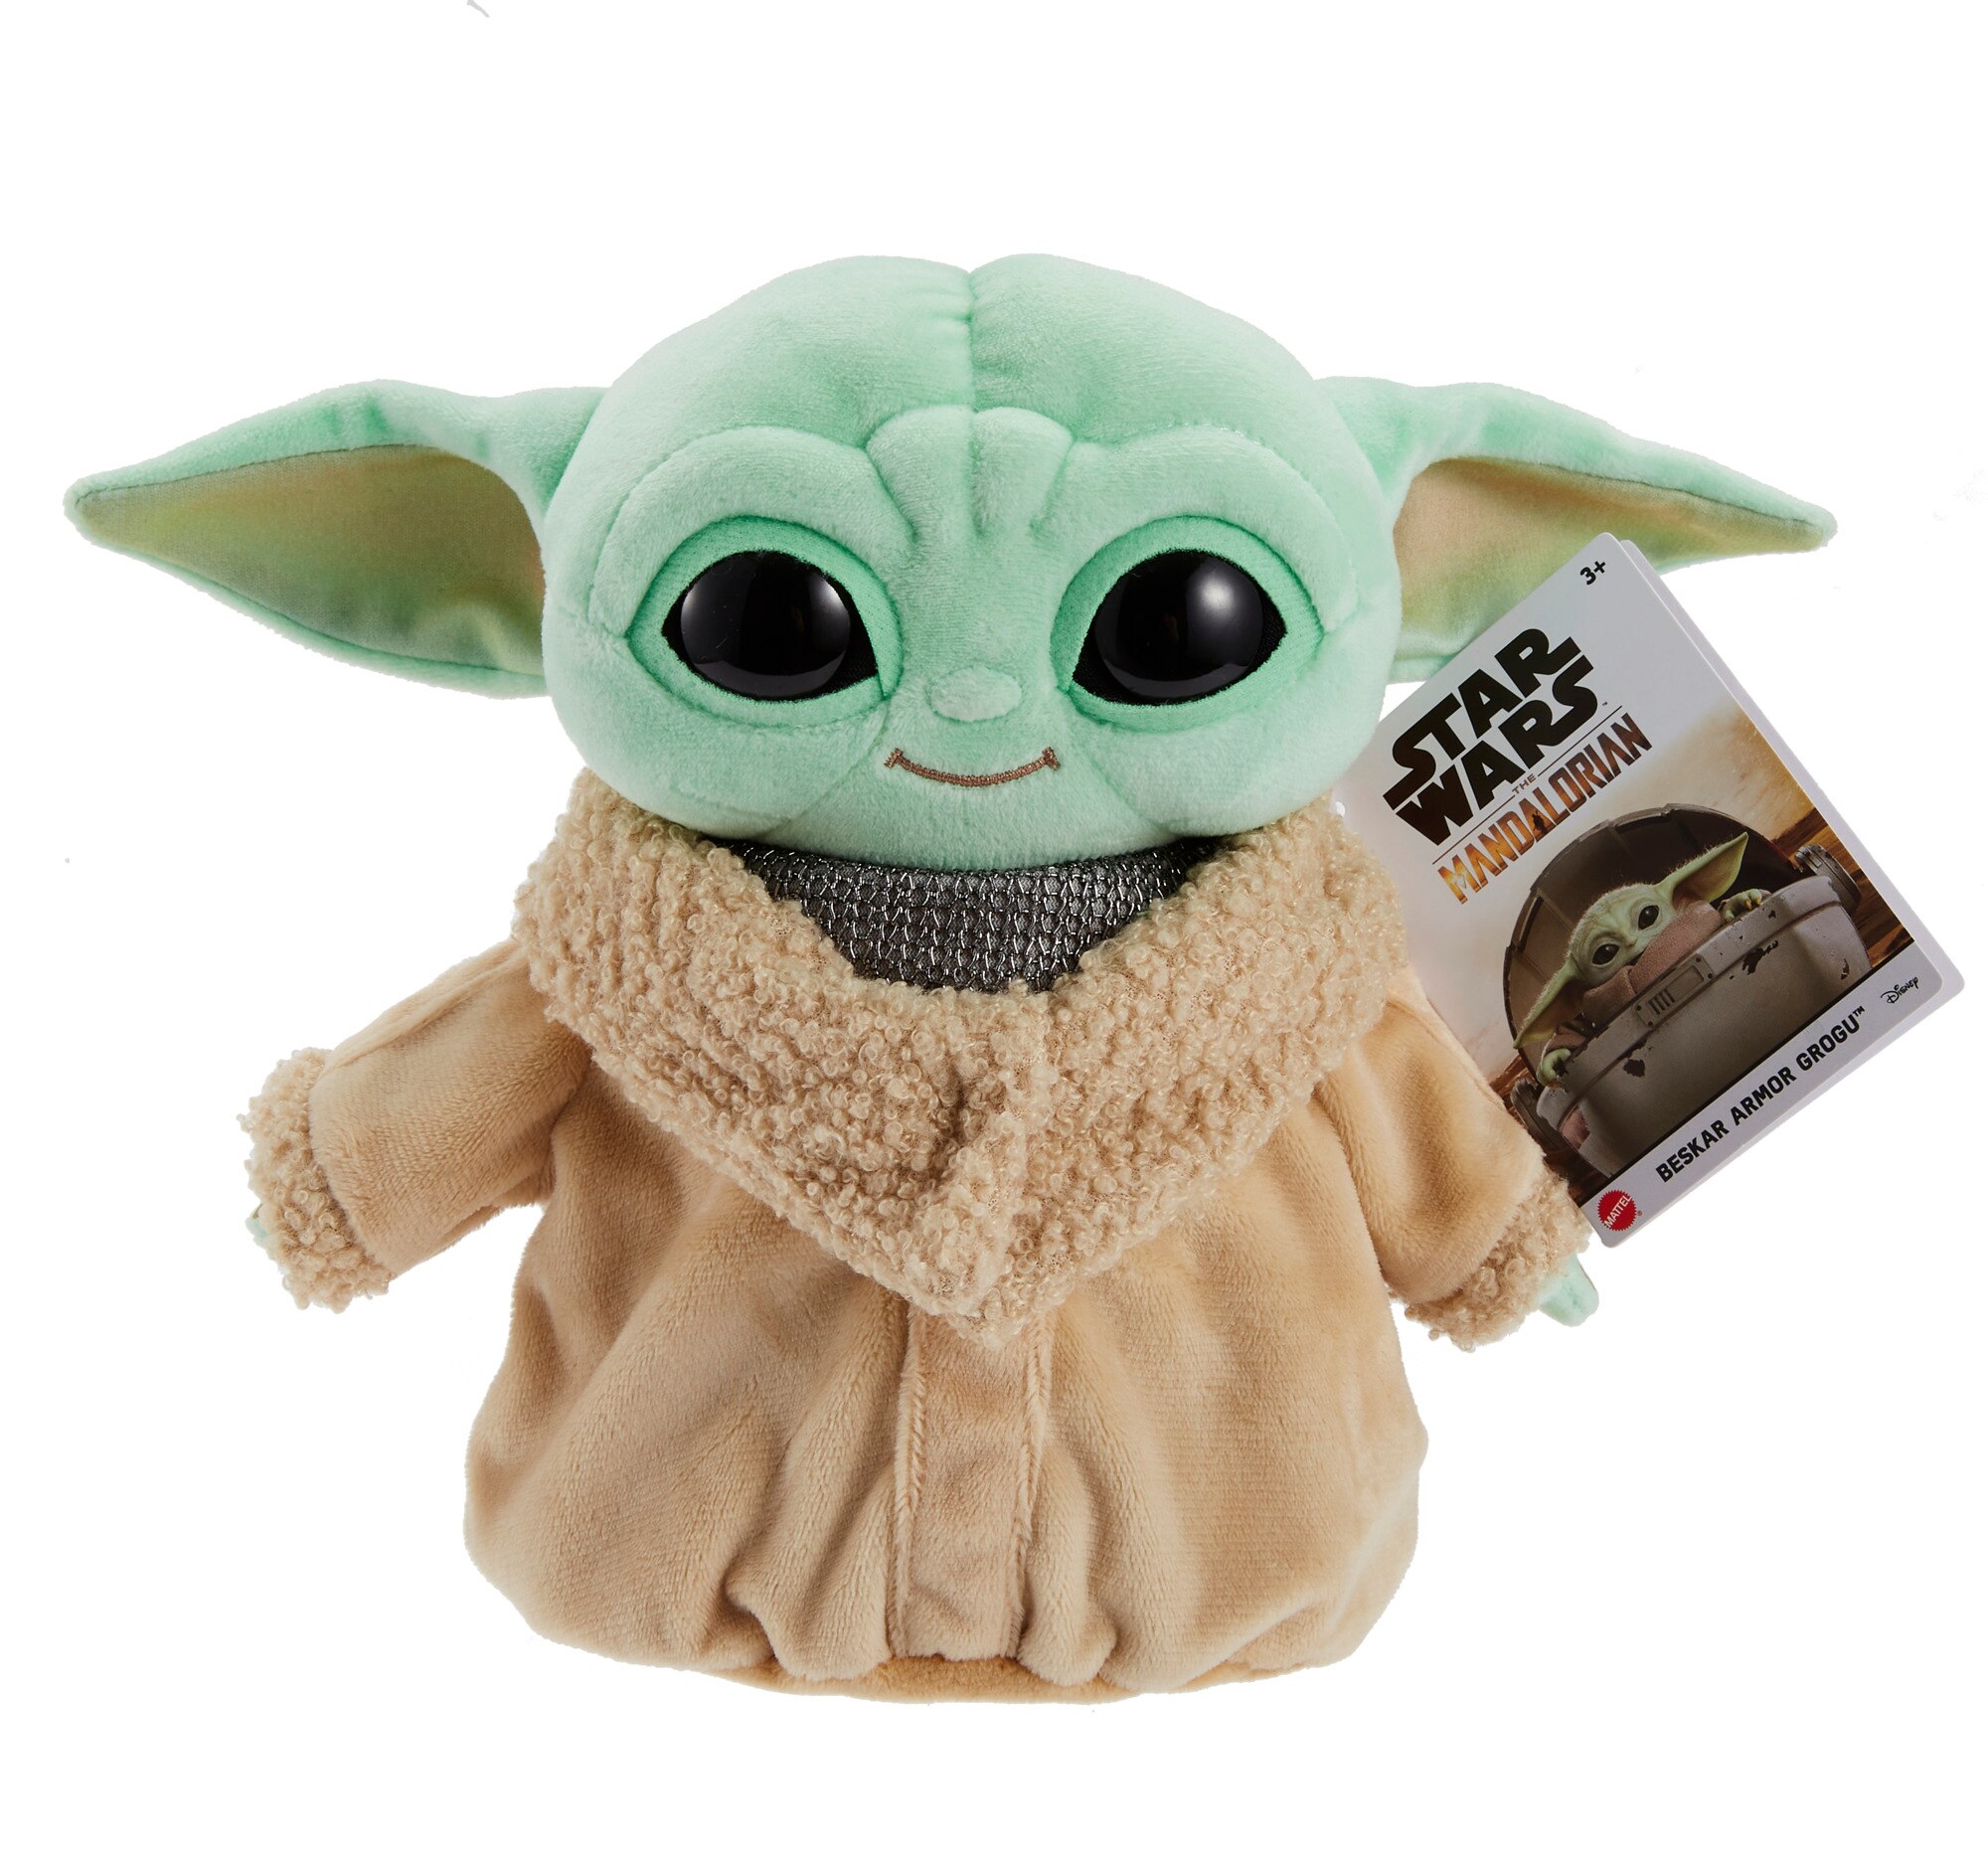 Star Wars Gifts: Star Wars Figurines & Merchandise